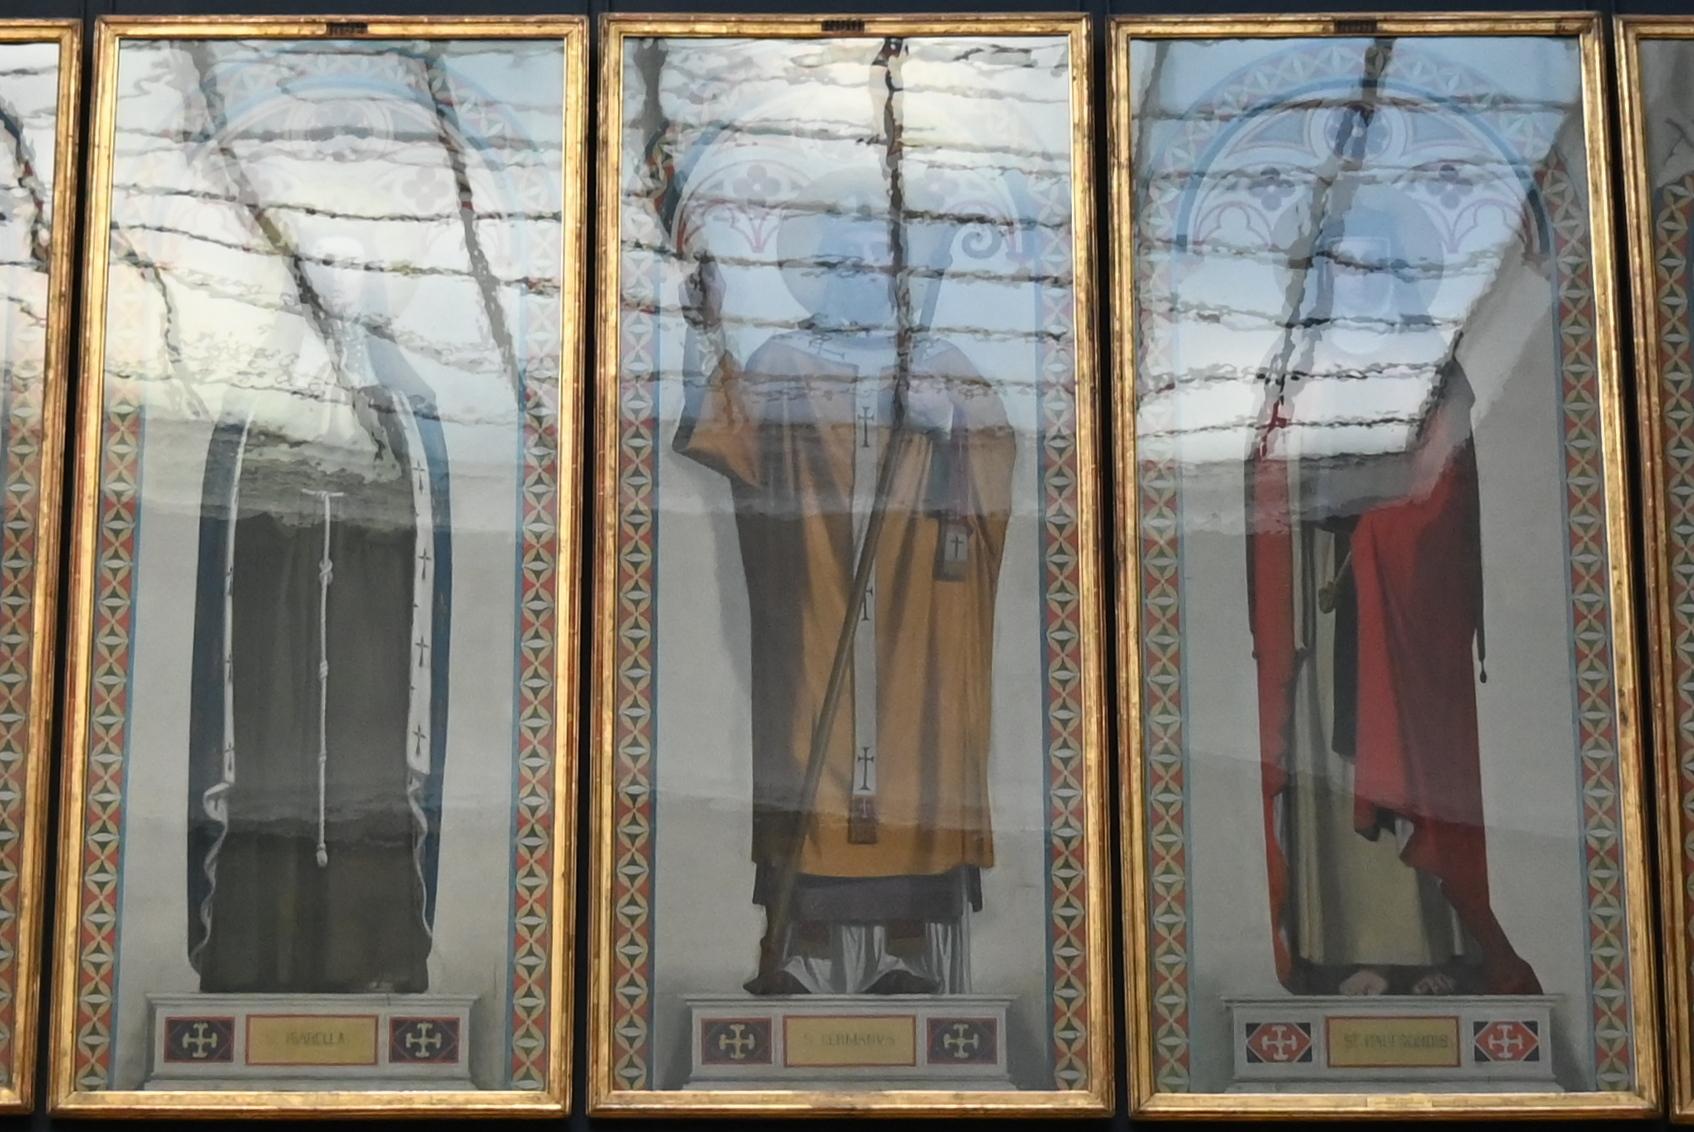 Jean-Auguste-Dominique Ingres (1805–1856), Saint Germain, Bischof von Paris, Dreux, Chapelle Royale Saint-Louis, jetzt Paris, Musée du Louvre, Saal 940, 1844